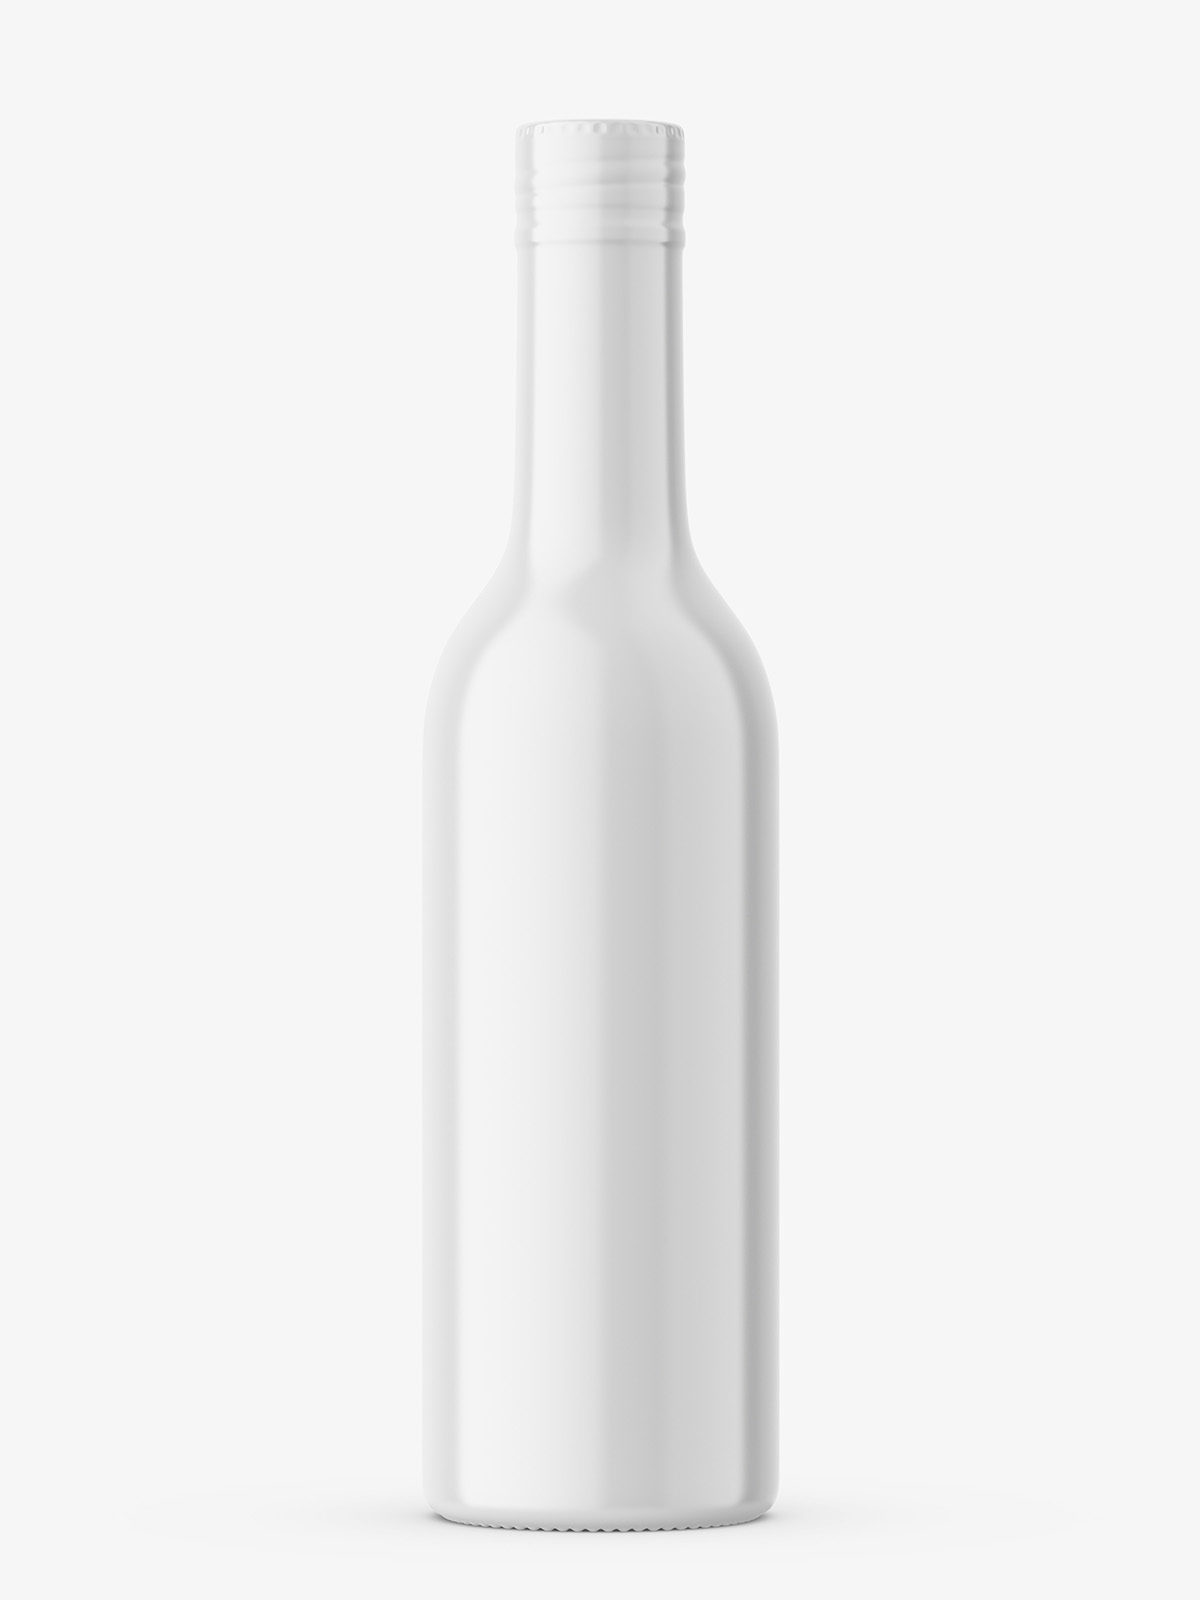 Download Liquor Bottle Mockup With Shrink Sleeve Label